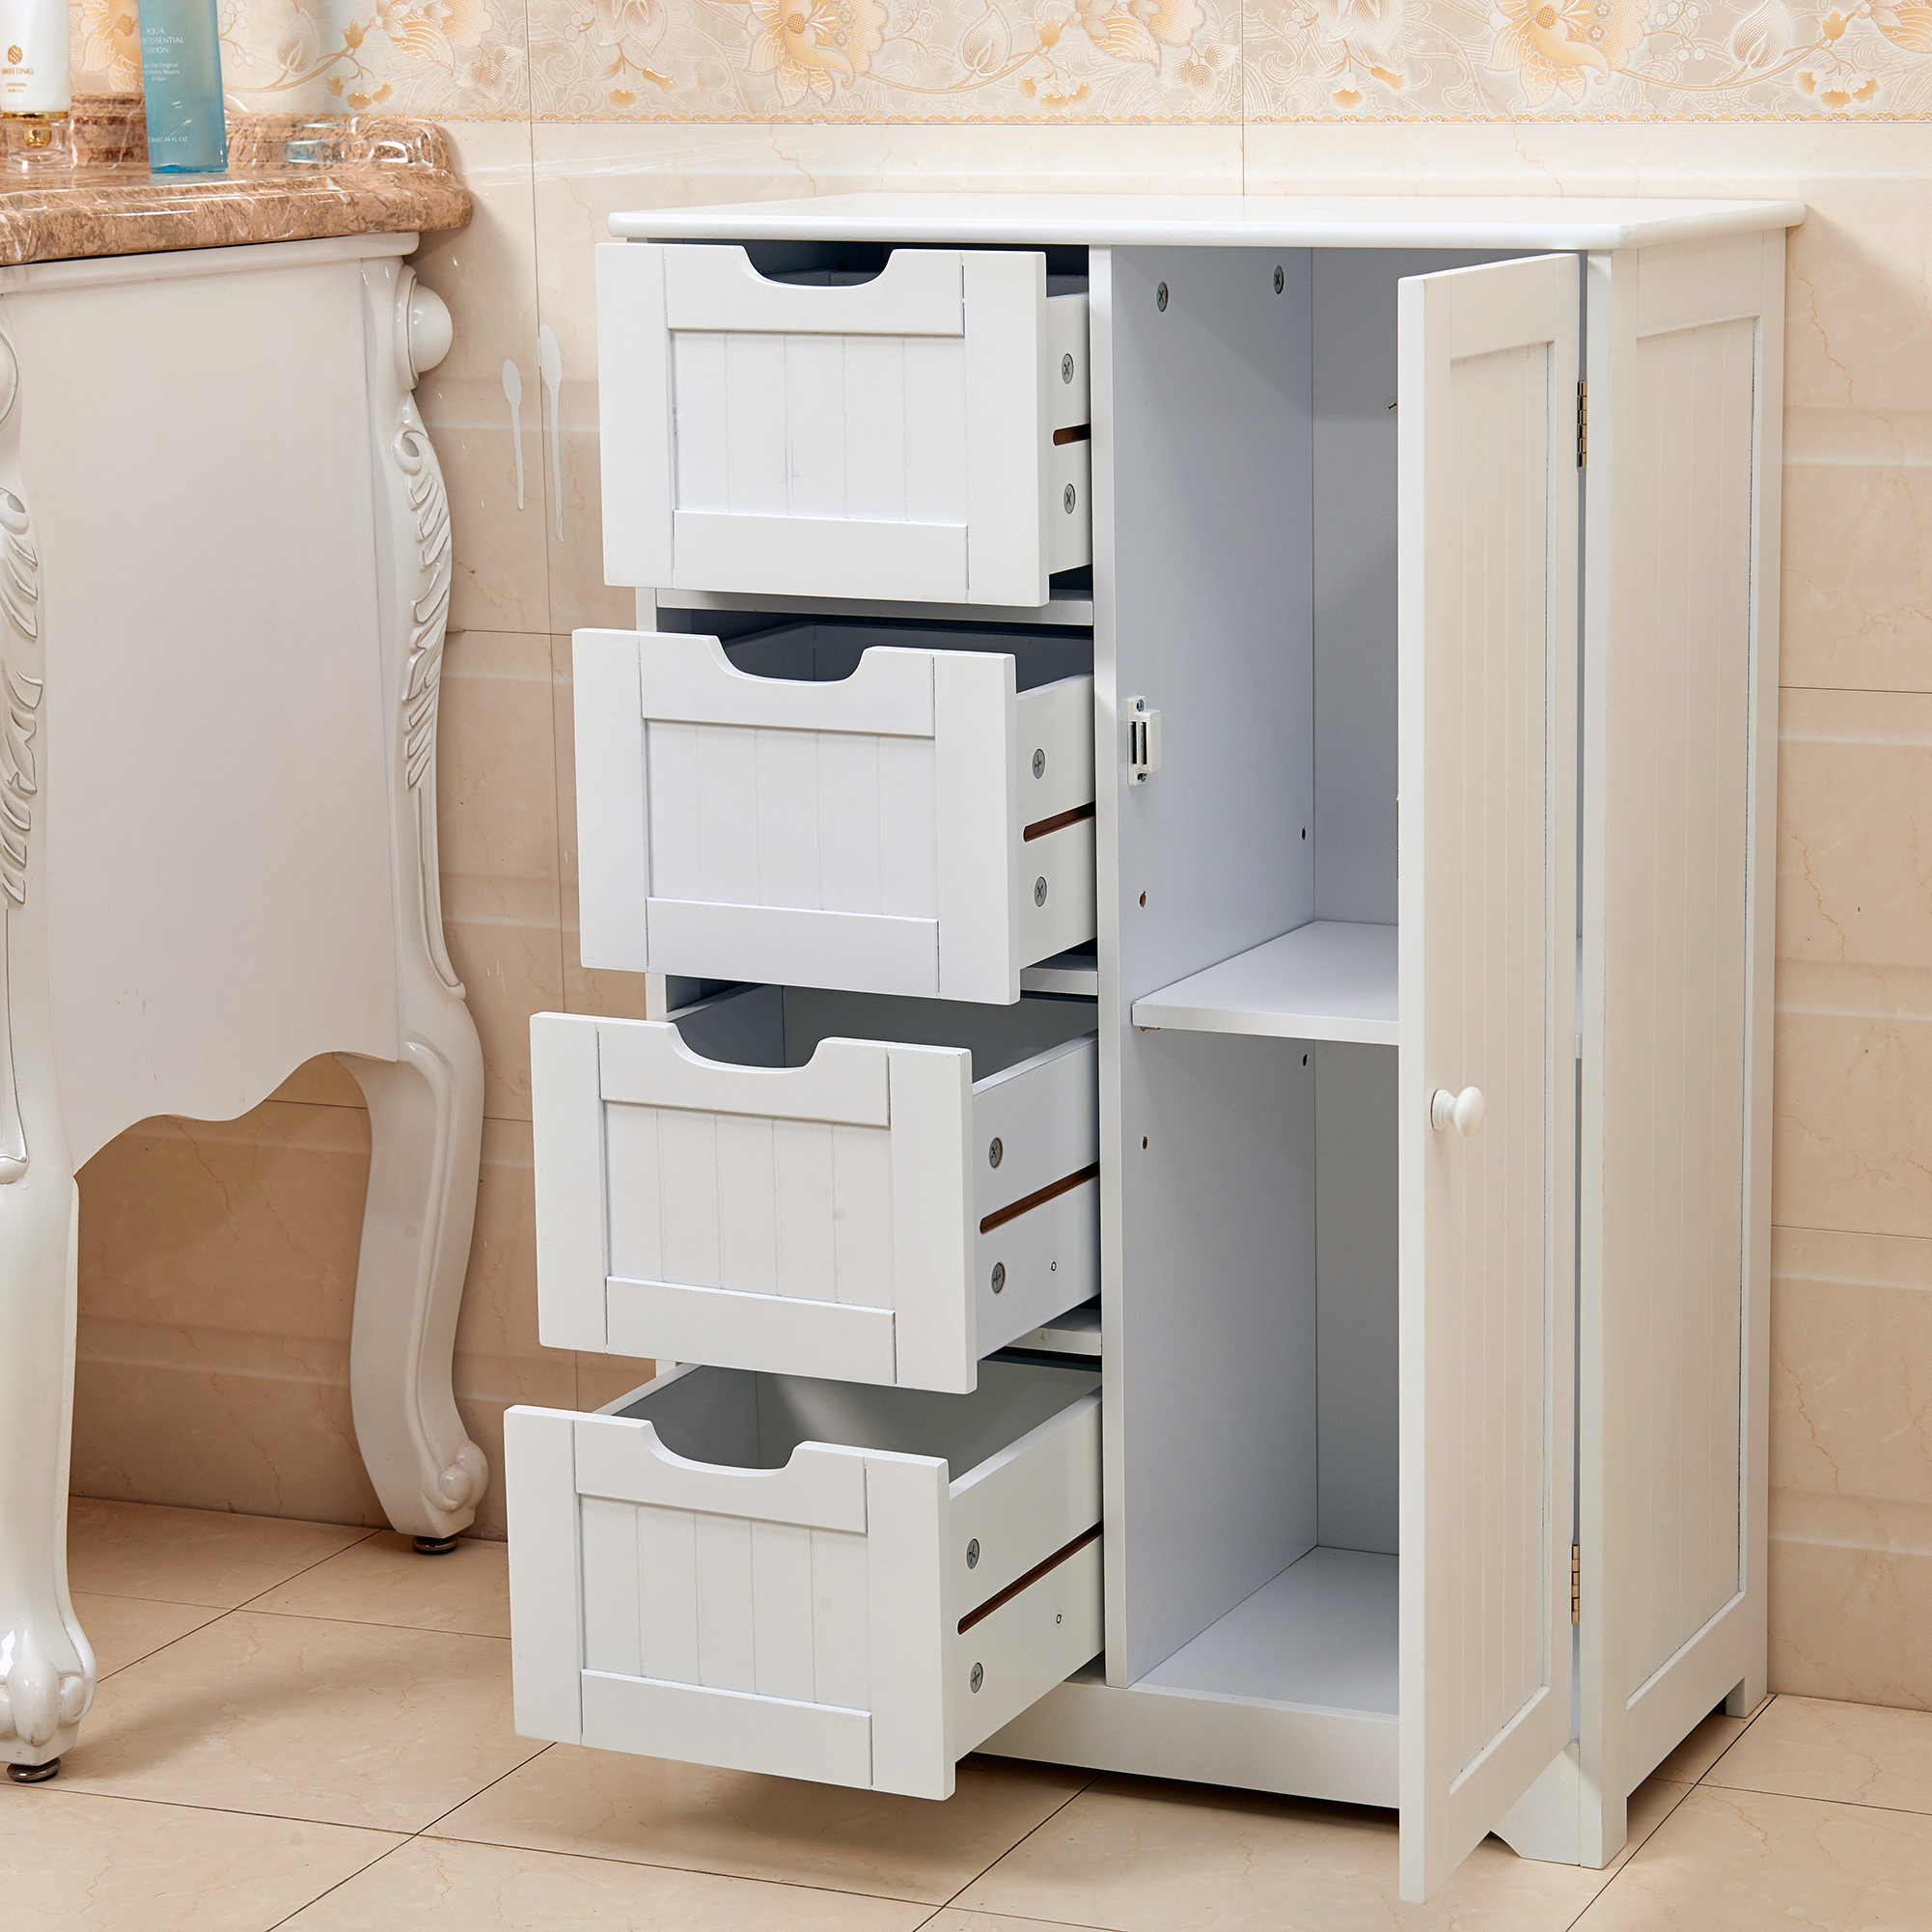 White Wooden 4 Drawer Bathroom Storage Cupboard Cabinet Free Standing Unit Bath  eBay